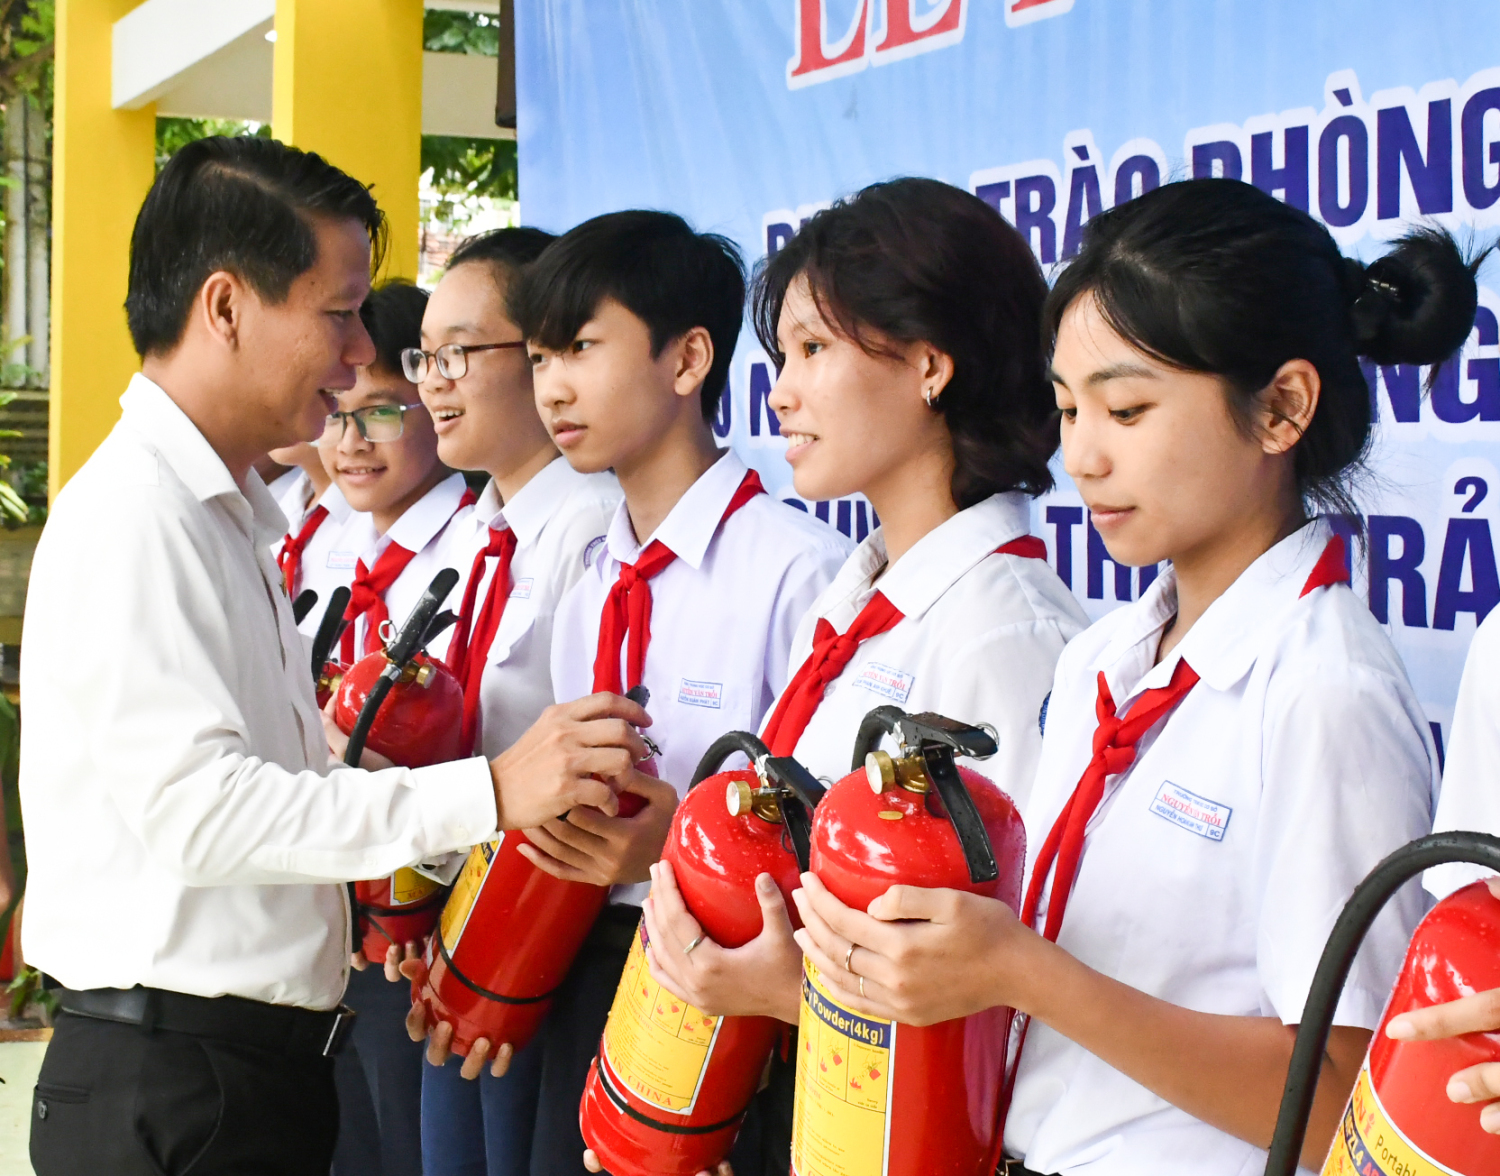 Bí thư Tỉnh đoàn Lương Minh Tùng trao tặng bình chữa cháy cho các em học sinh có hoàn cảnh khó khăn.